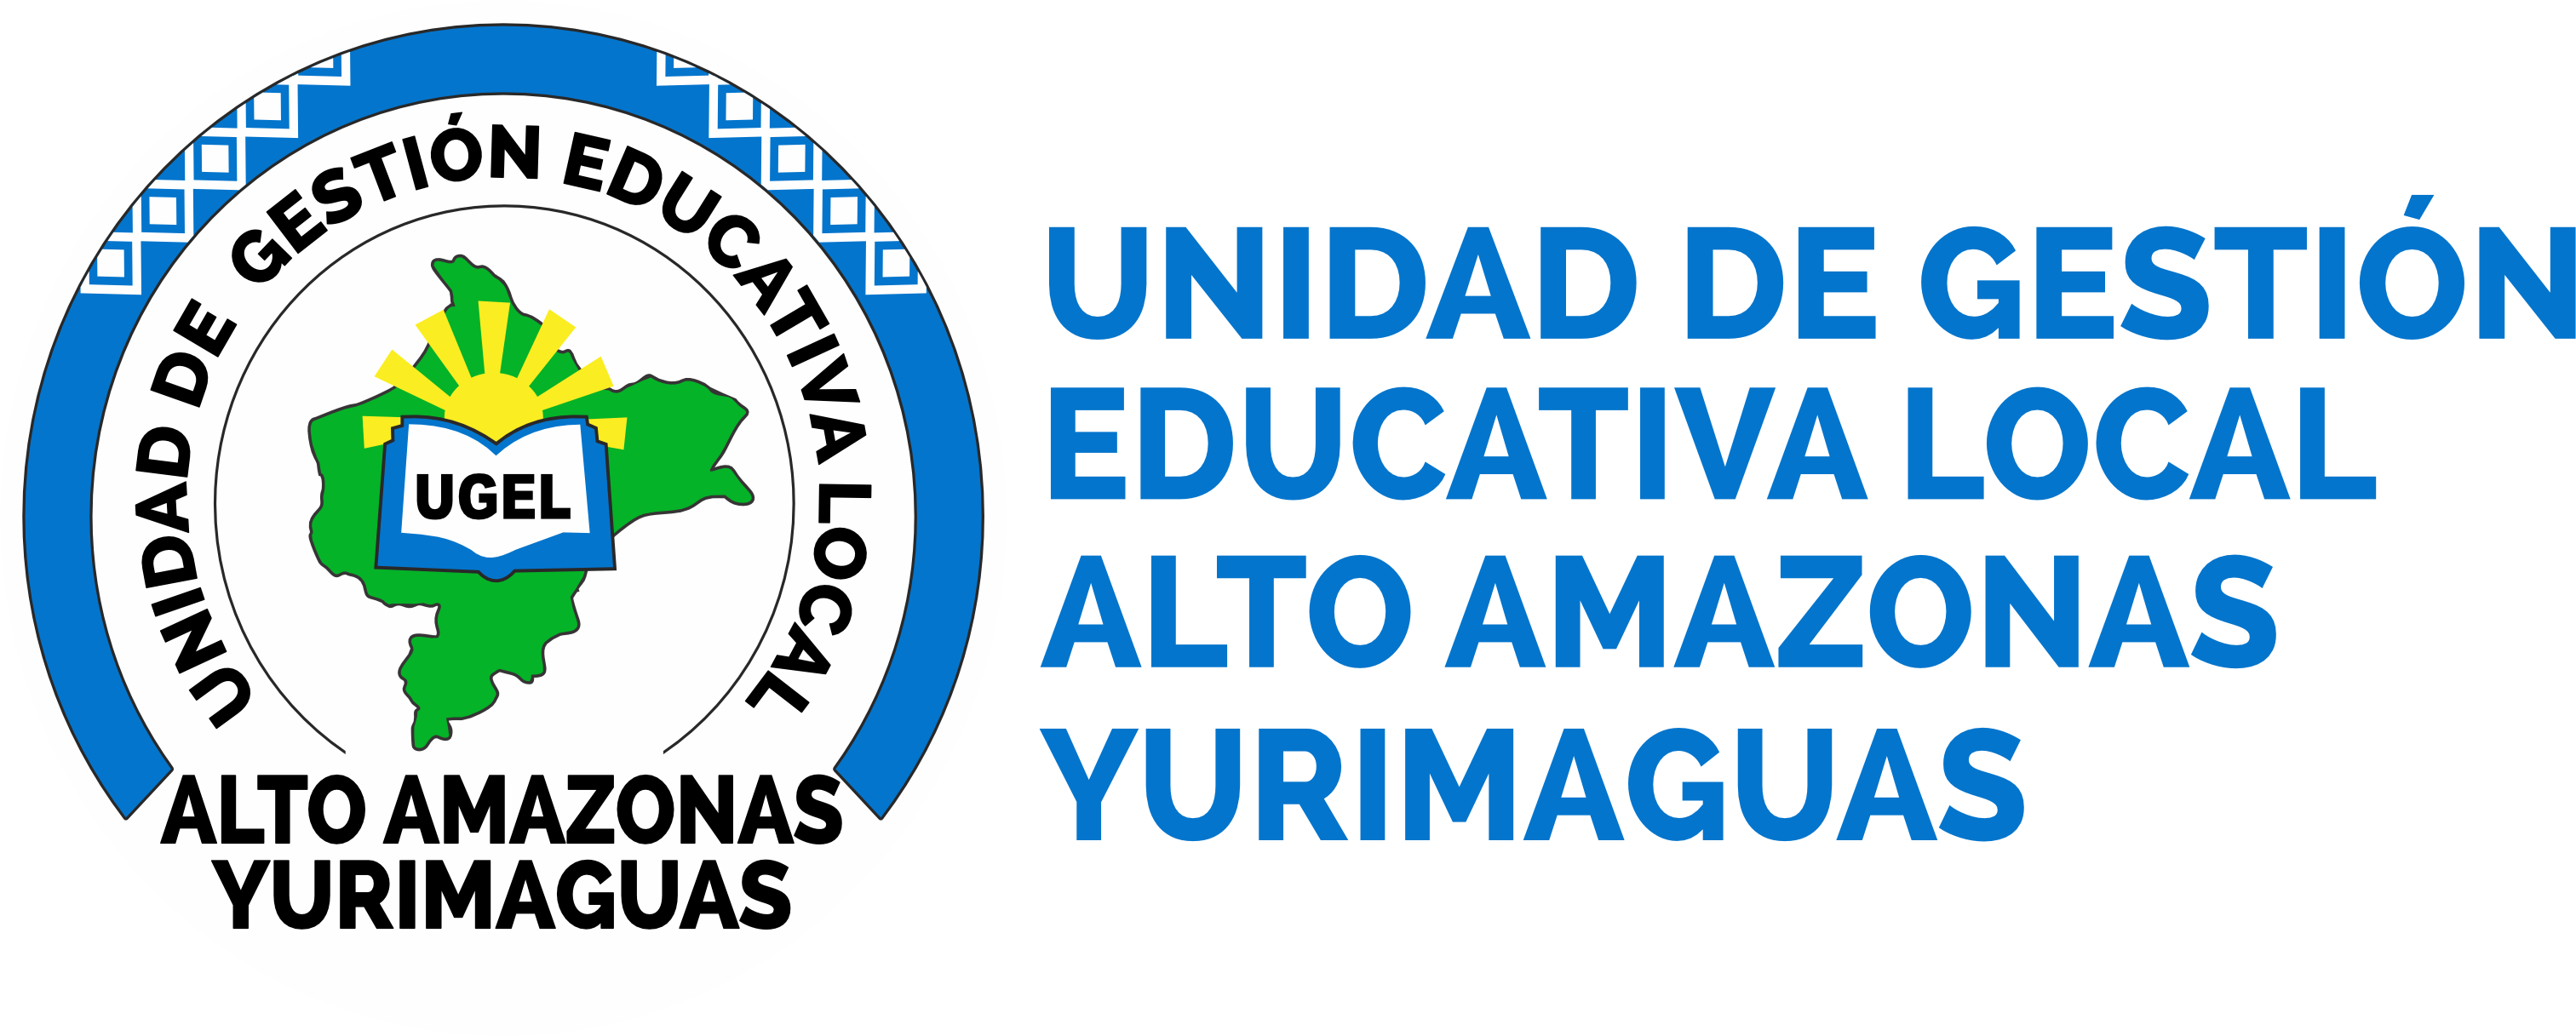 Unidad de Gestión Educativa Loca de Alto Amazonas